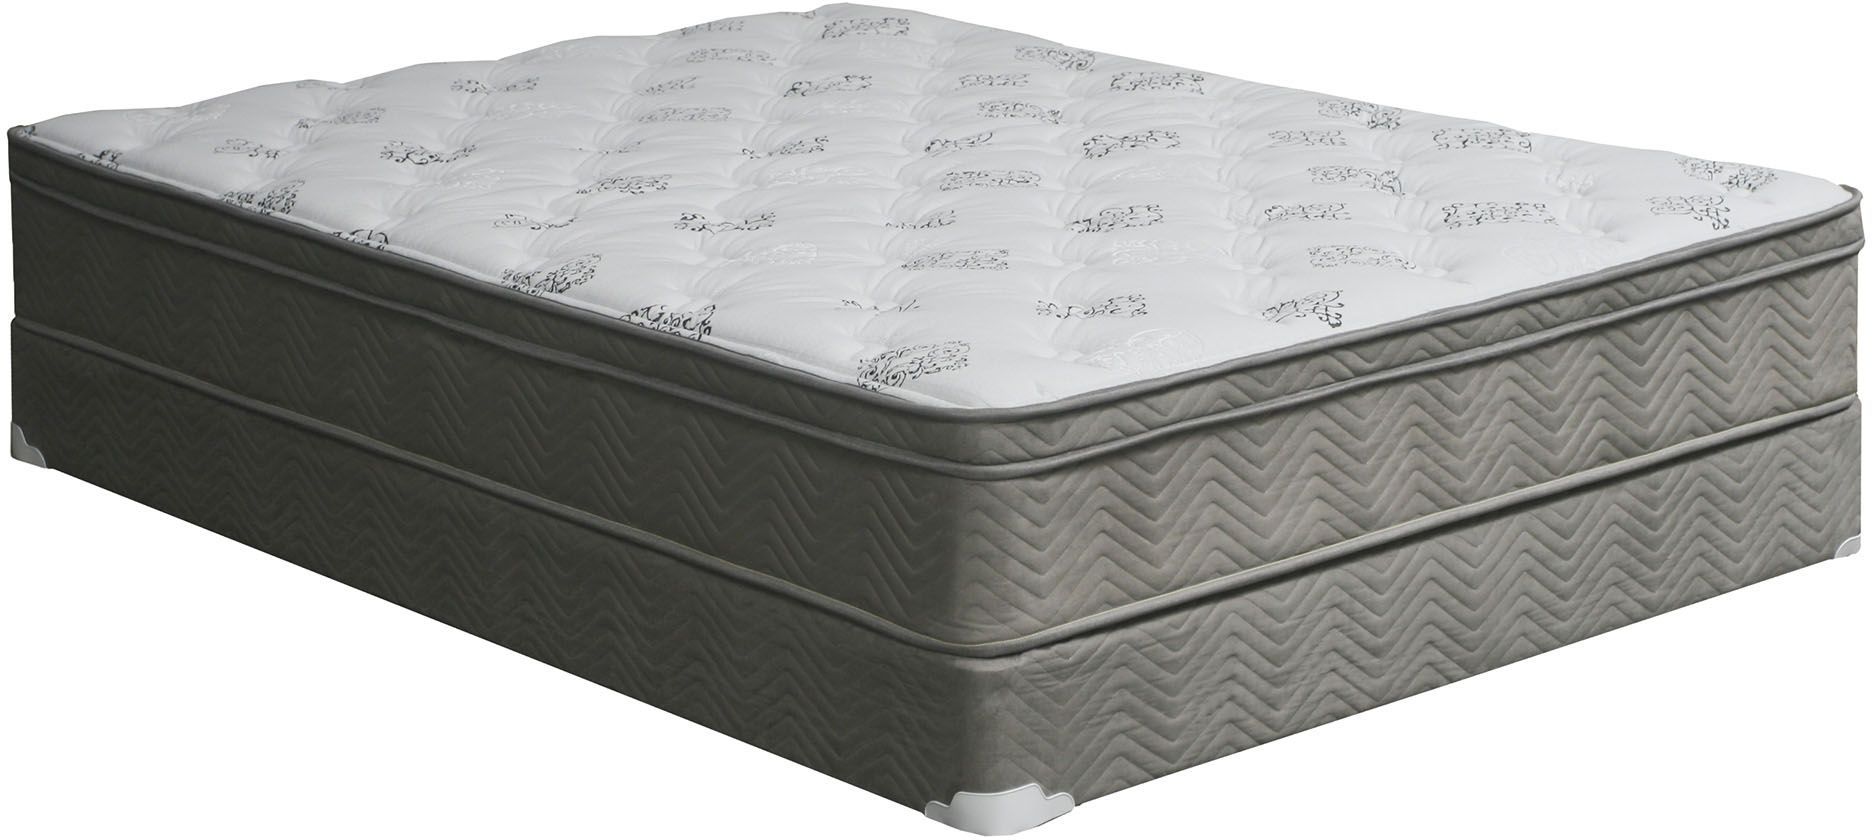 richmond euro top queen mattress